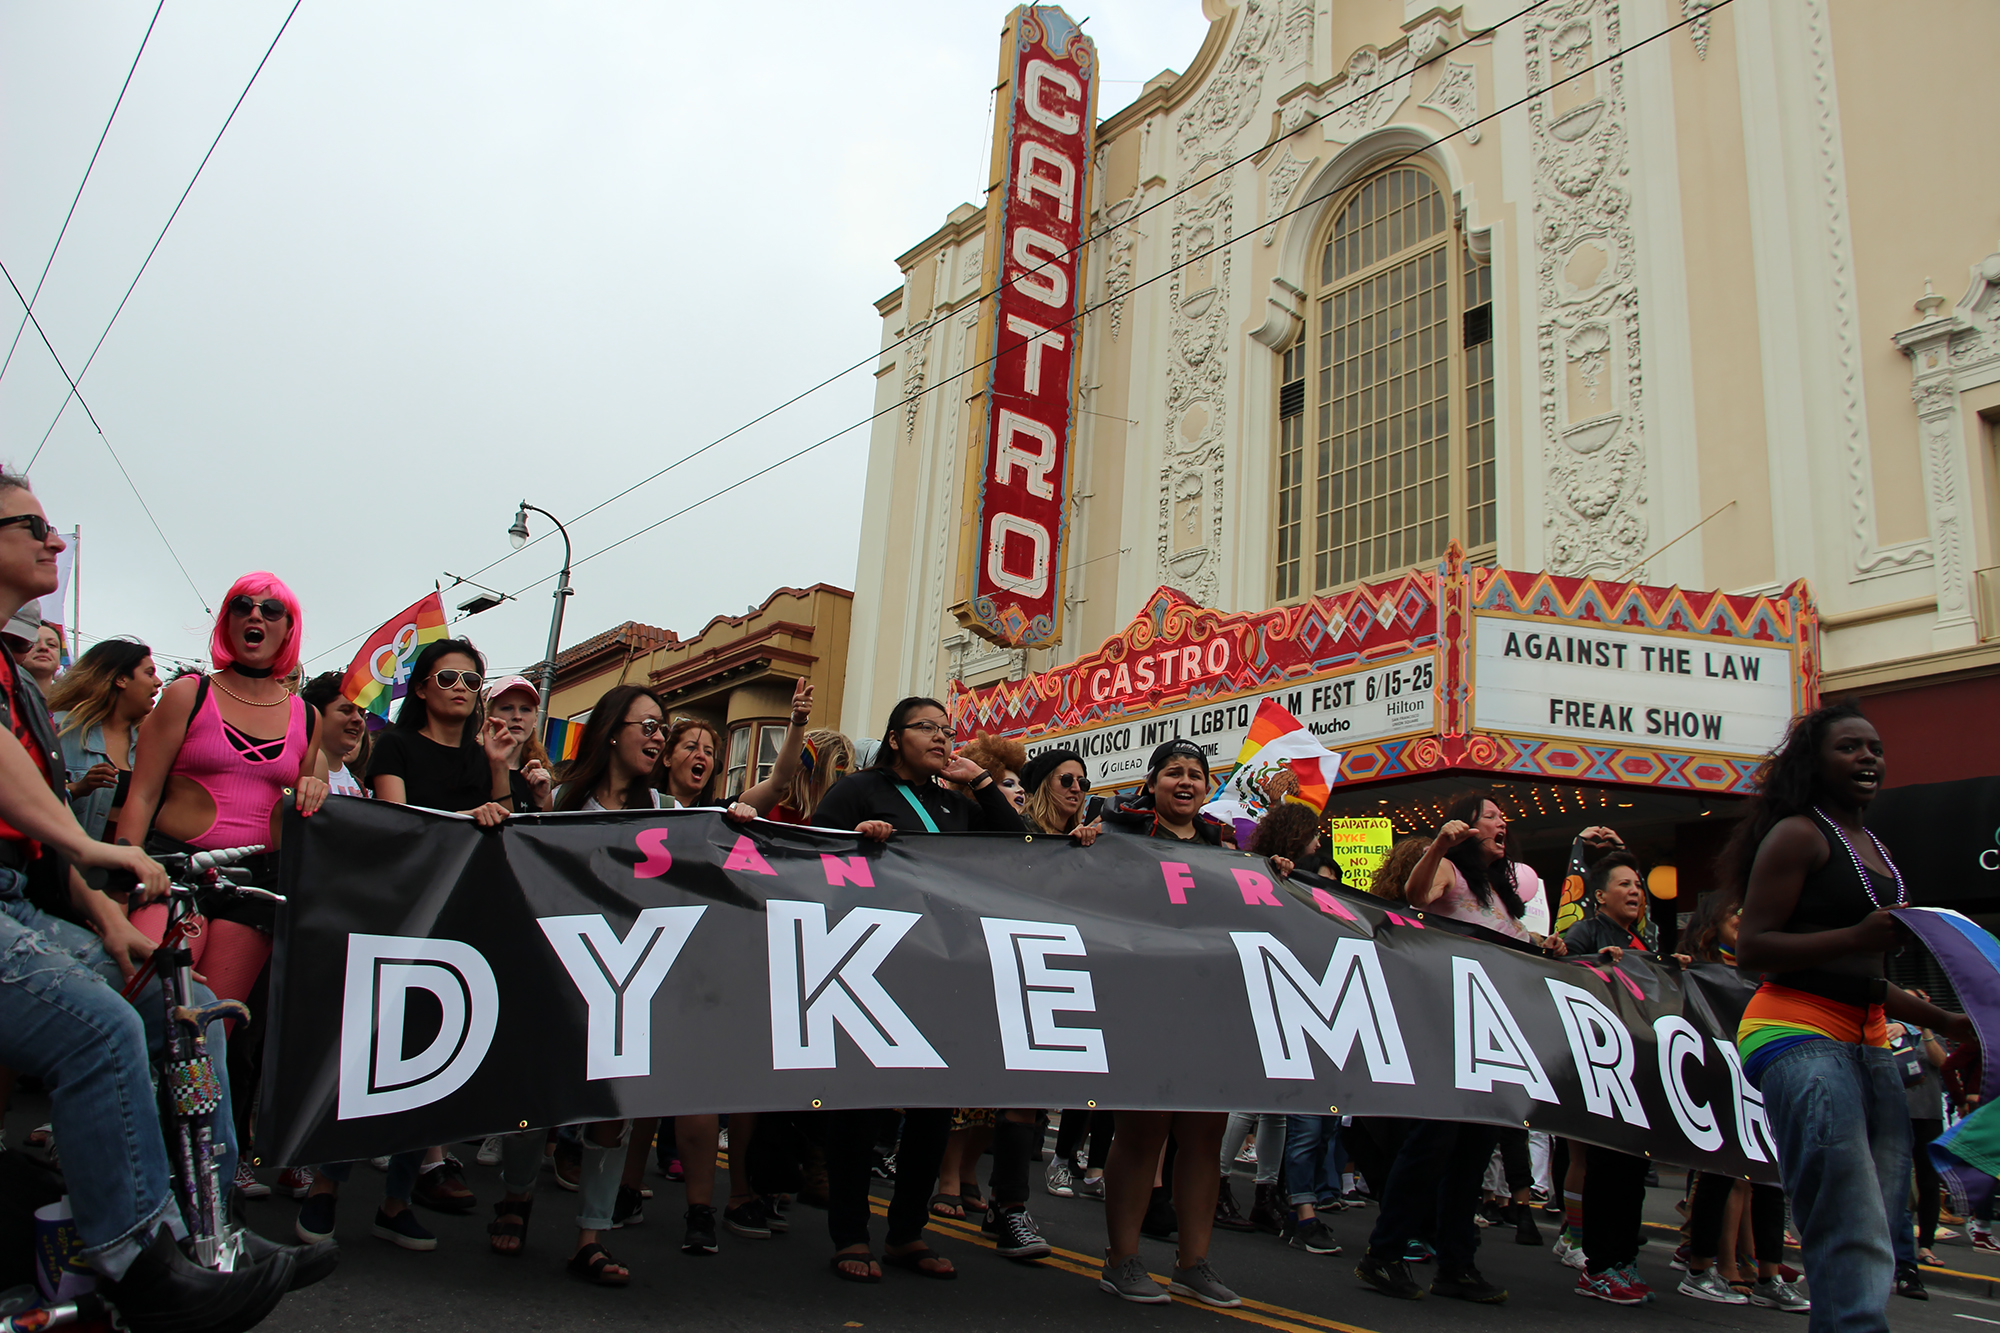 The 25th San Francisco Dyke March 2017